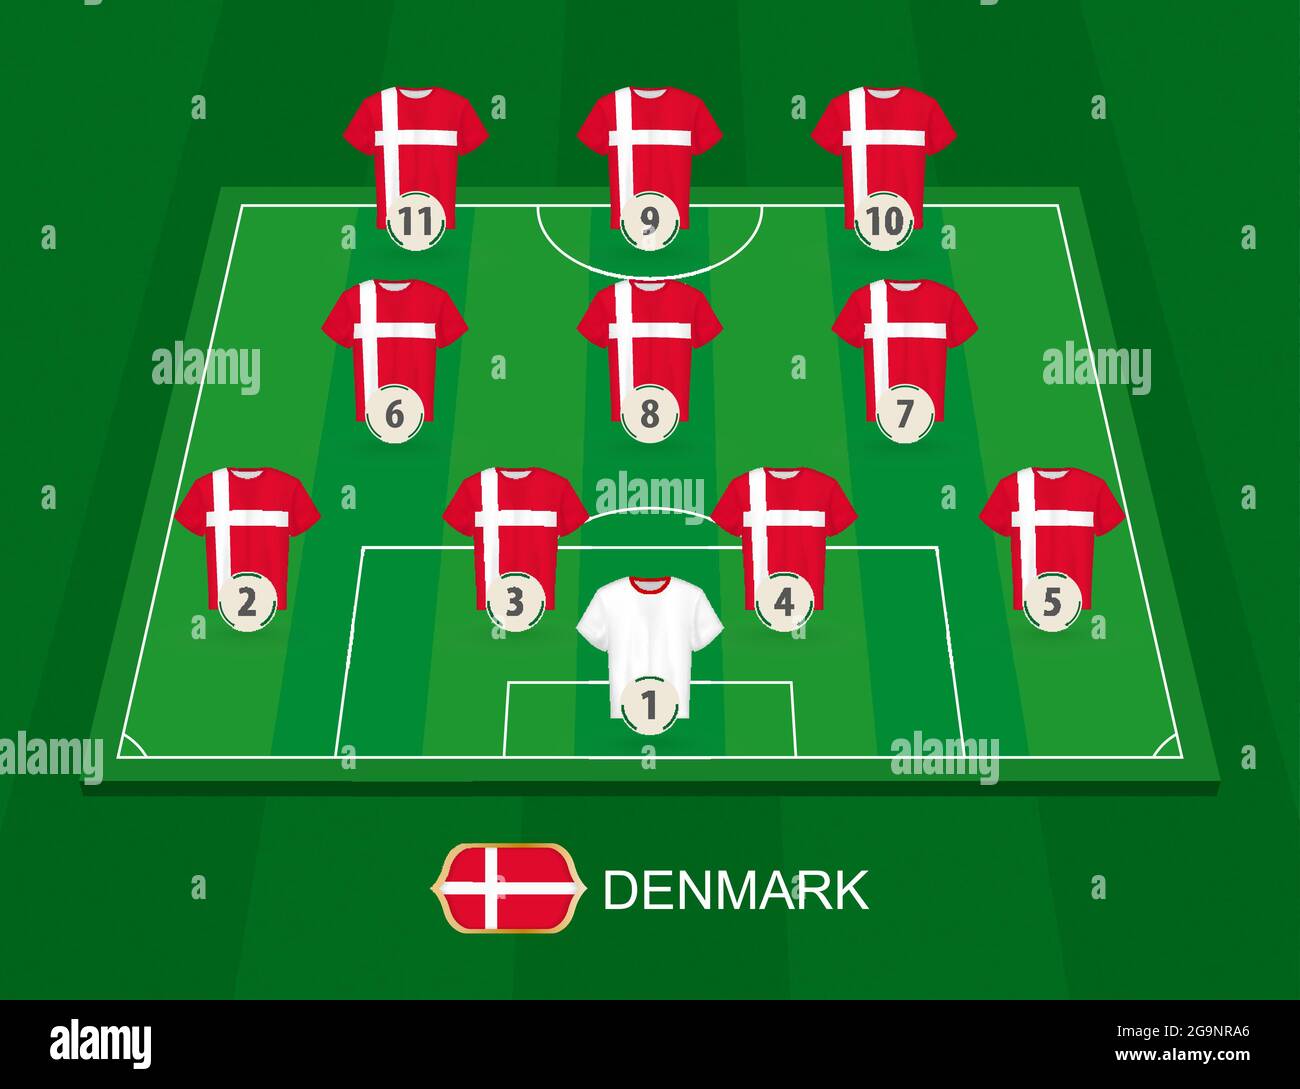 Fußballplatz mit den Spielern der dänischen Nationalmannschaft.  Aufstellungen Formation 4-3-3 auf halber Fußballplatz Stock-Vektorgrafik -  Alamy